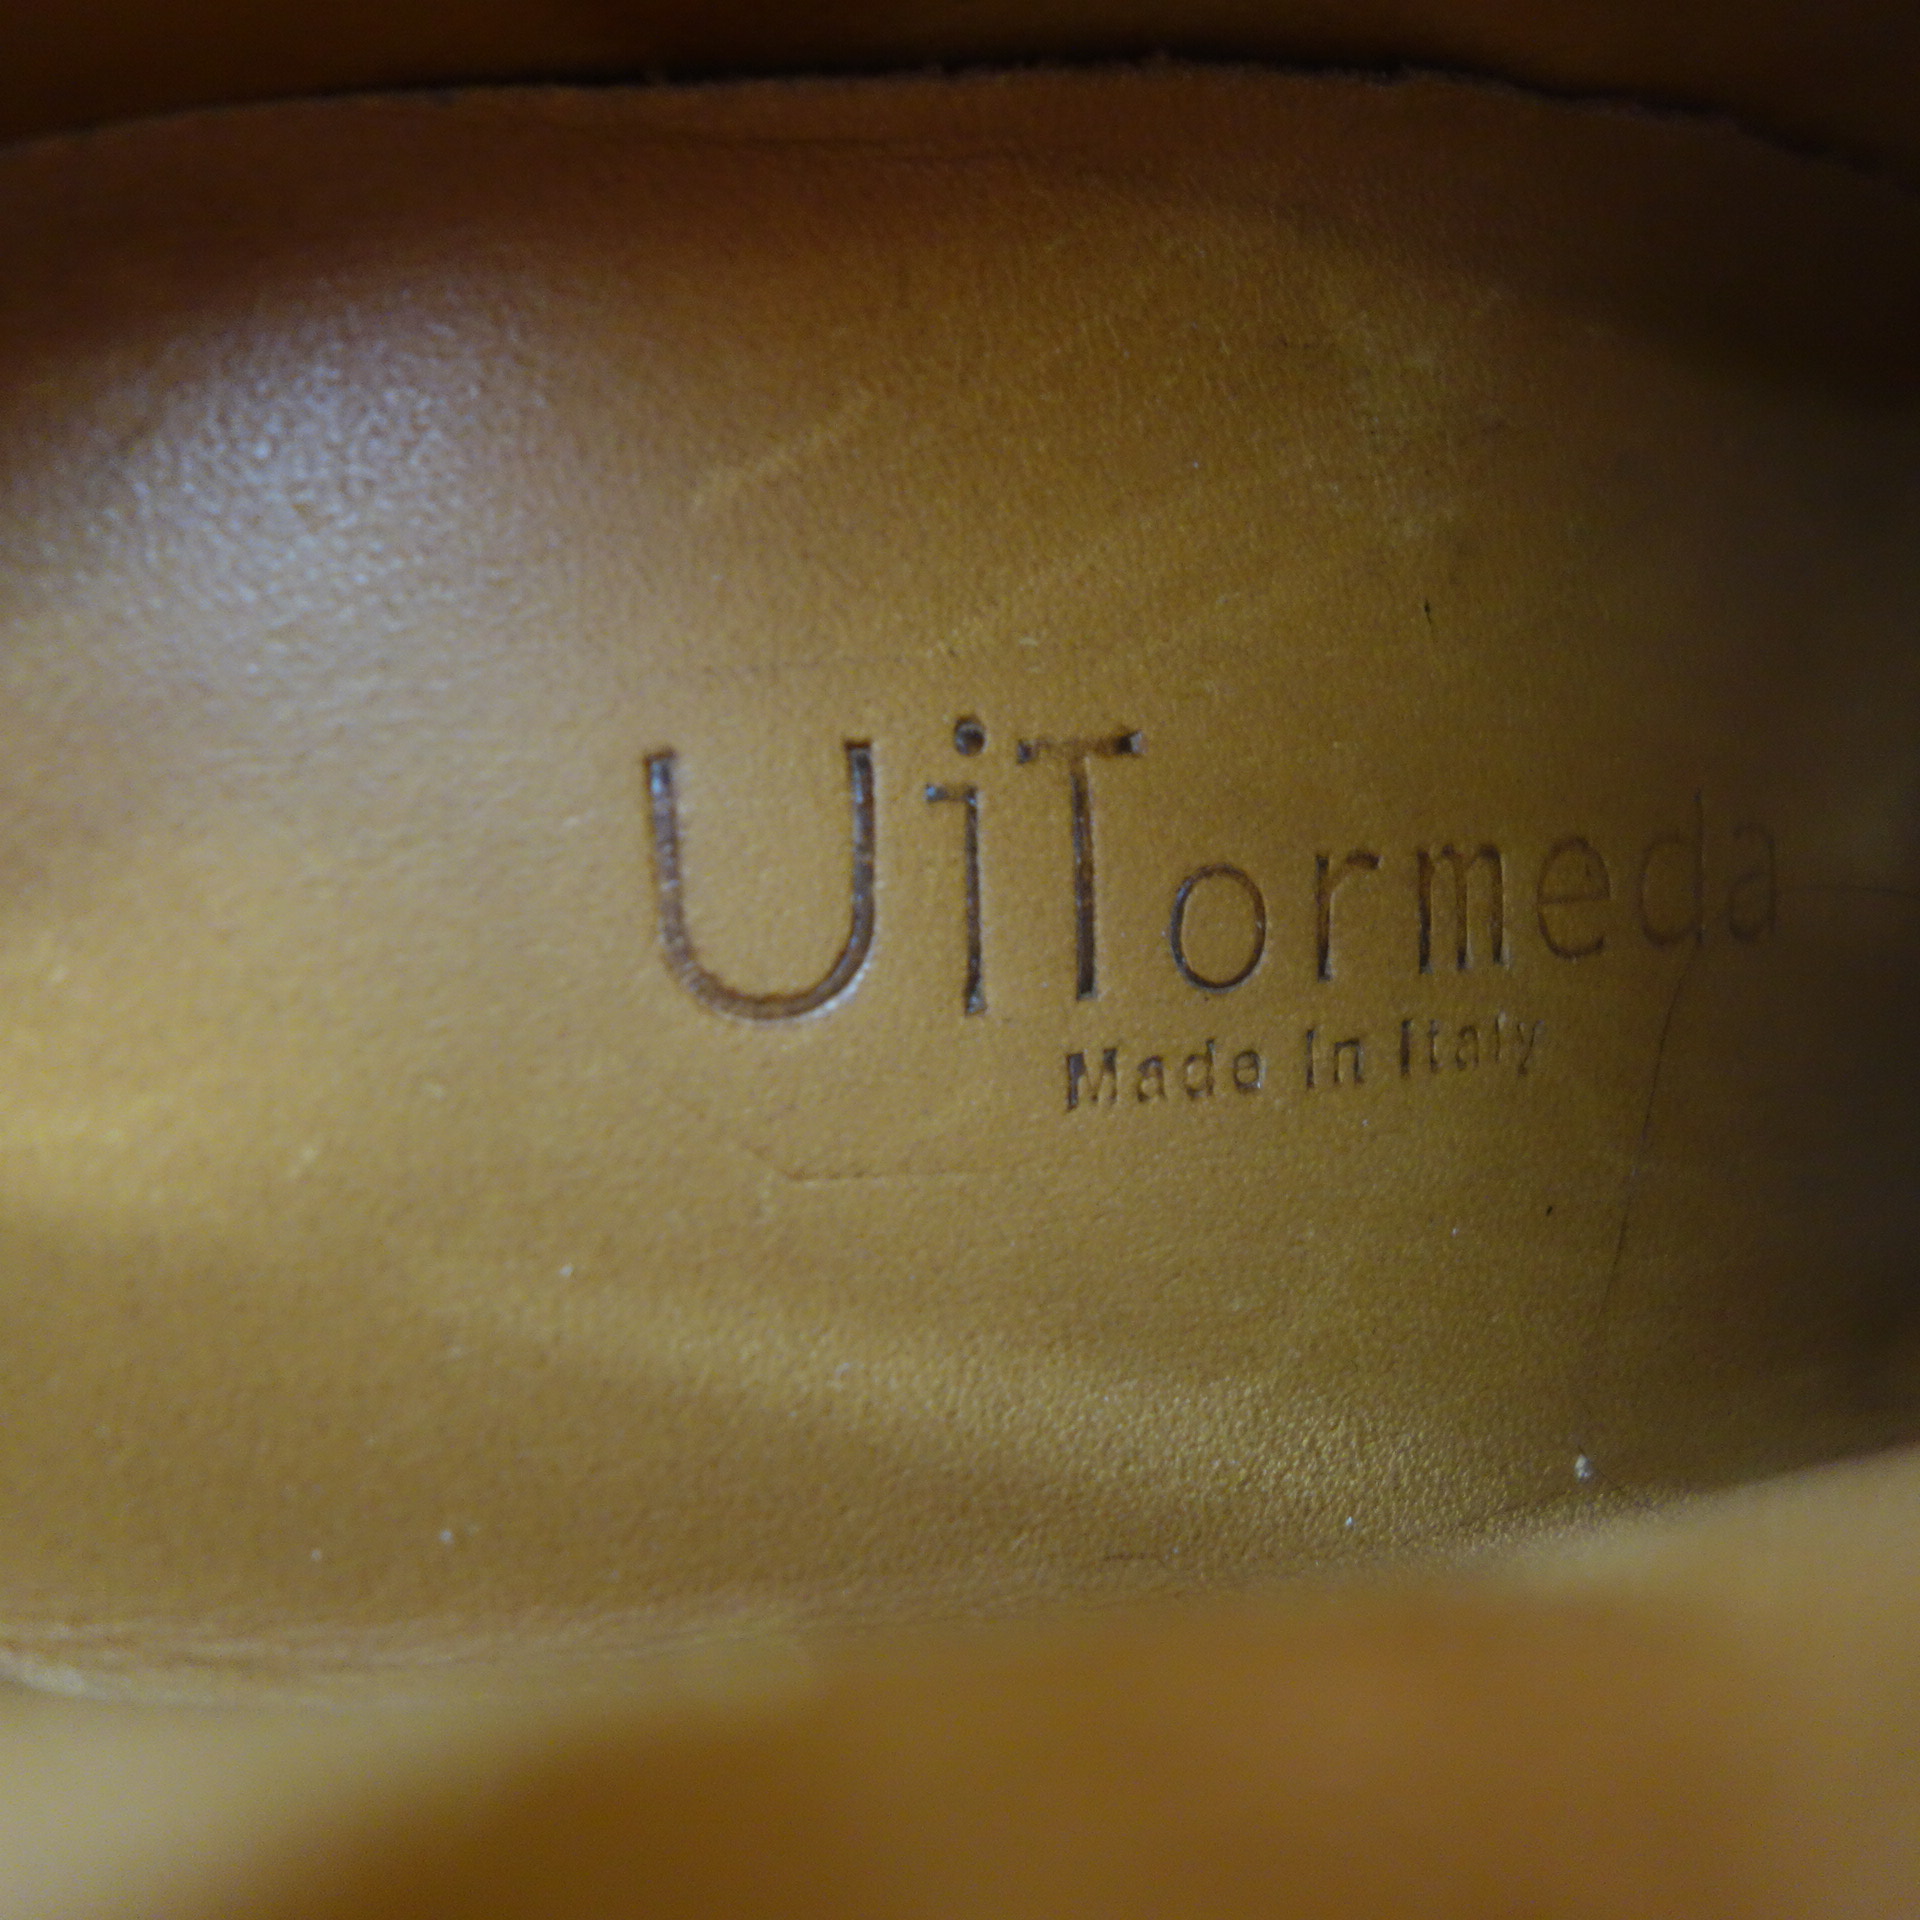 UIT ORMEDA UTTERLY ITALIAN TREND Damen Schuhe Stiefeletten Boots Stiefel Leder Bordeaux